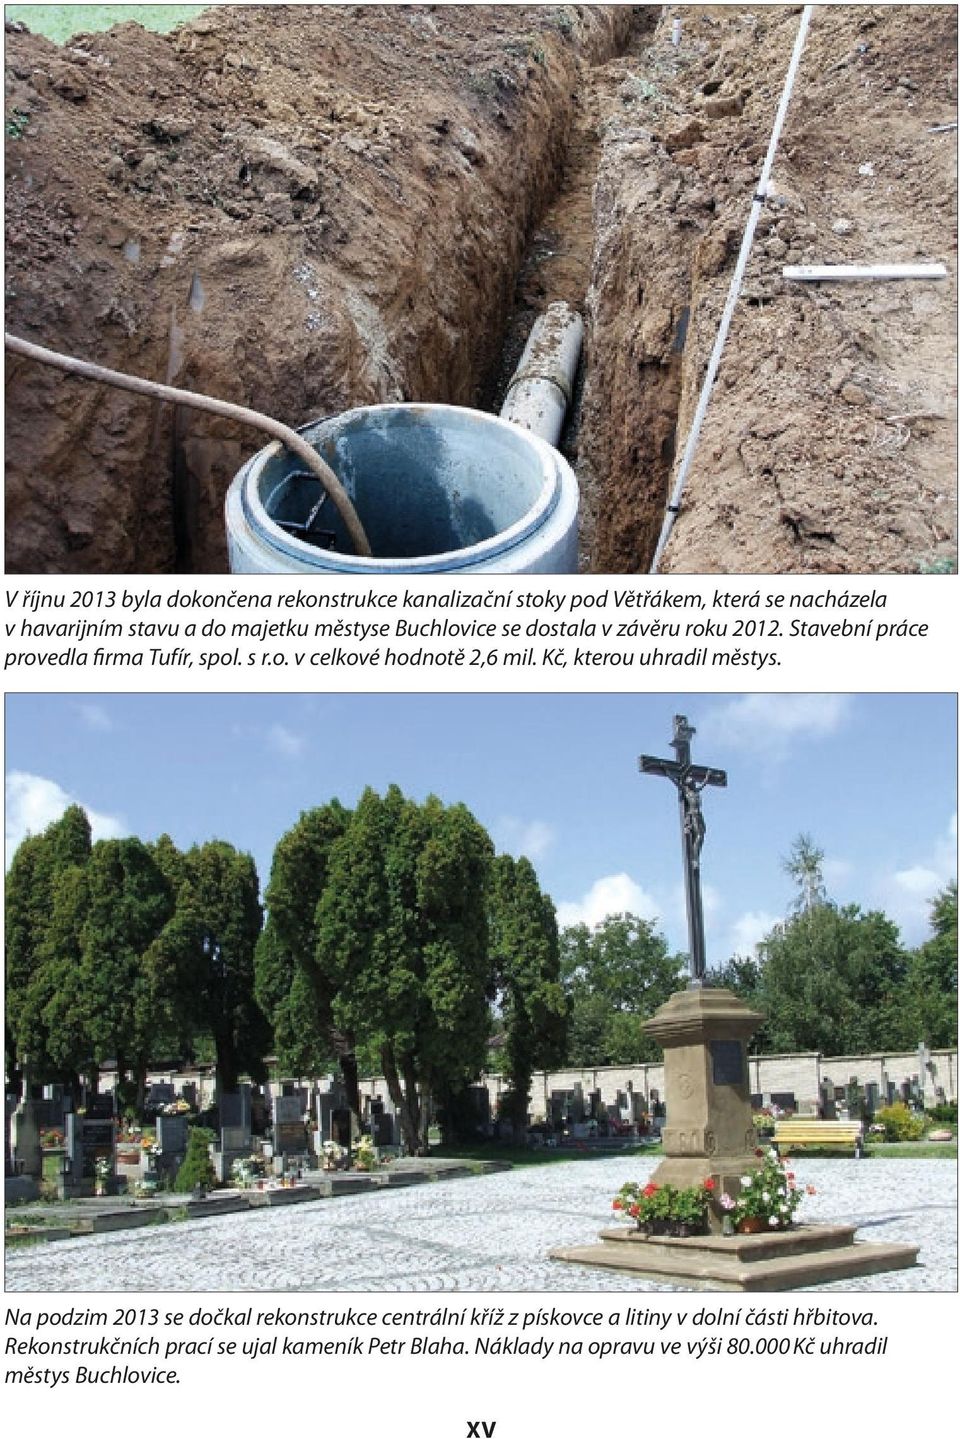 Kč, kterou uhradil městys. Na podzim 2013 se dočkal rekonstrukce centrální kříž z pískovce a litiny v dolní části hřbitova.